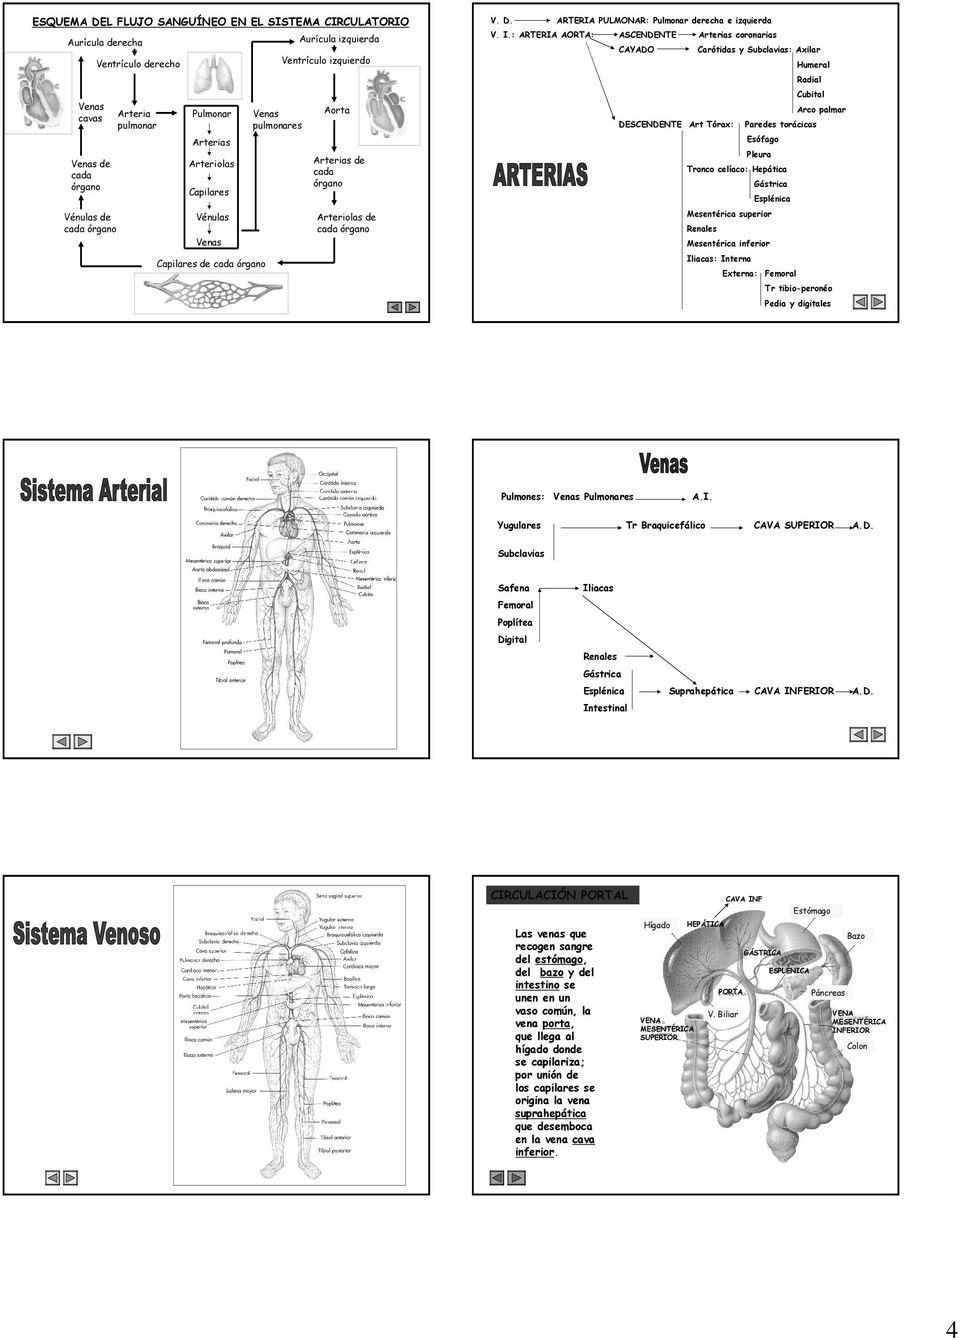 pulmonares Arco palmar Aorta DESCENDENTE Art Tórax: Esófago Arterias Venas de cada órgano Arteriolas Vénulas de cada órgano Vénulas Capilares Paredes torácicas Pleura Arterias de cada órgano Tronco